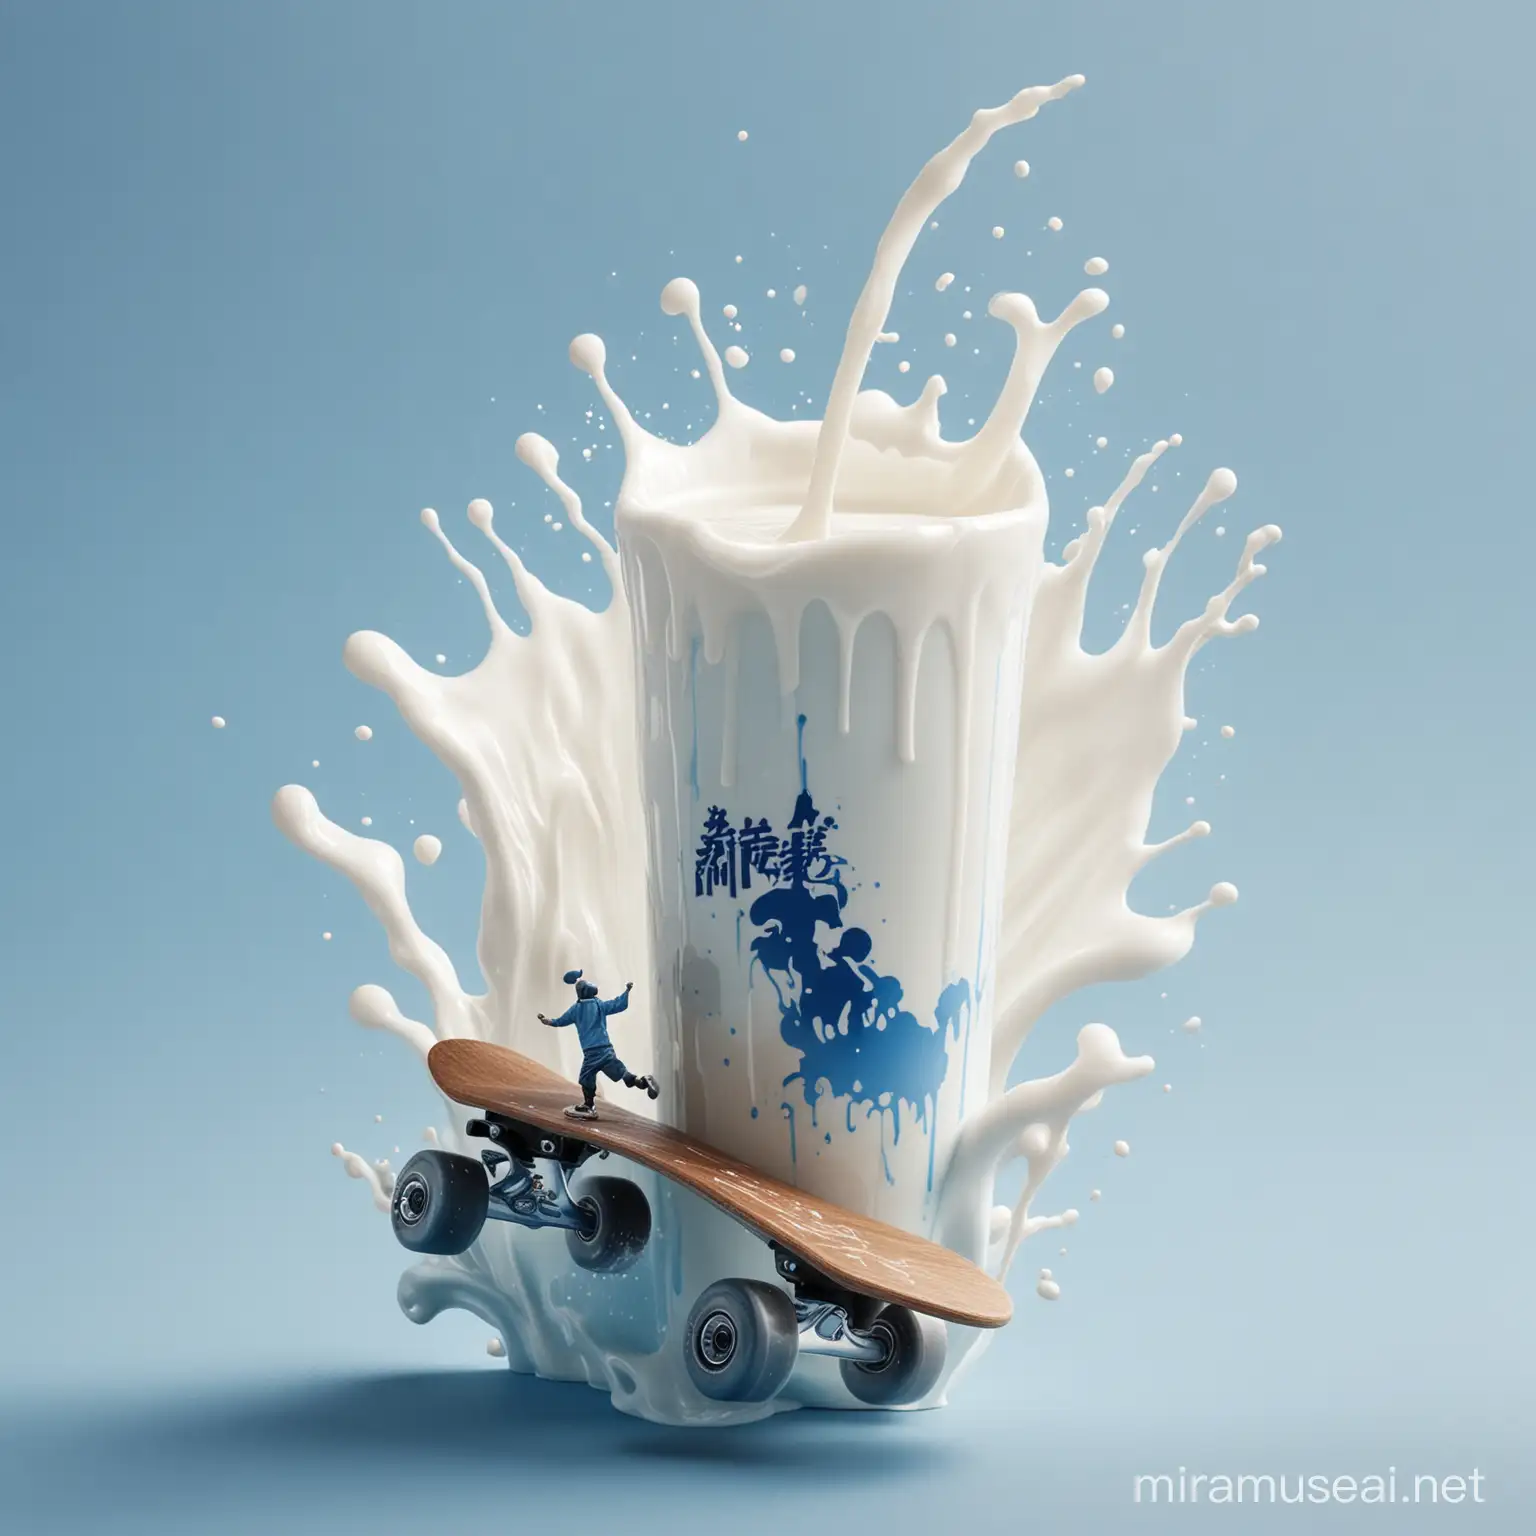 品牌为悦鲜活牛奶
图片整体为蓝白配色，图片右上角呈现牛奶倾泻而出的场景。倾泻而出的汇聚成一个小人骑着滑板的轮廓，位于图片正中间。